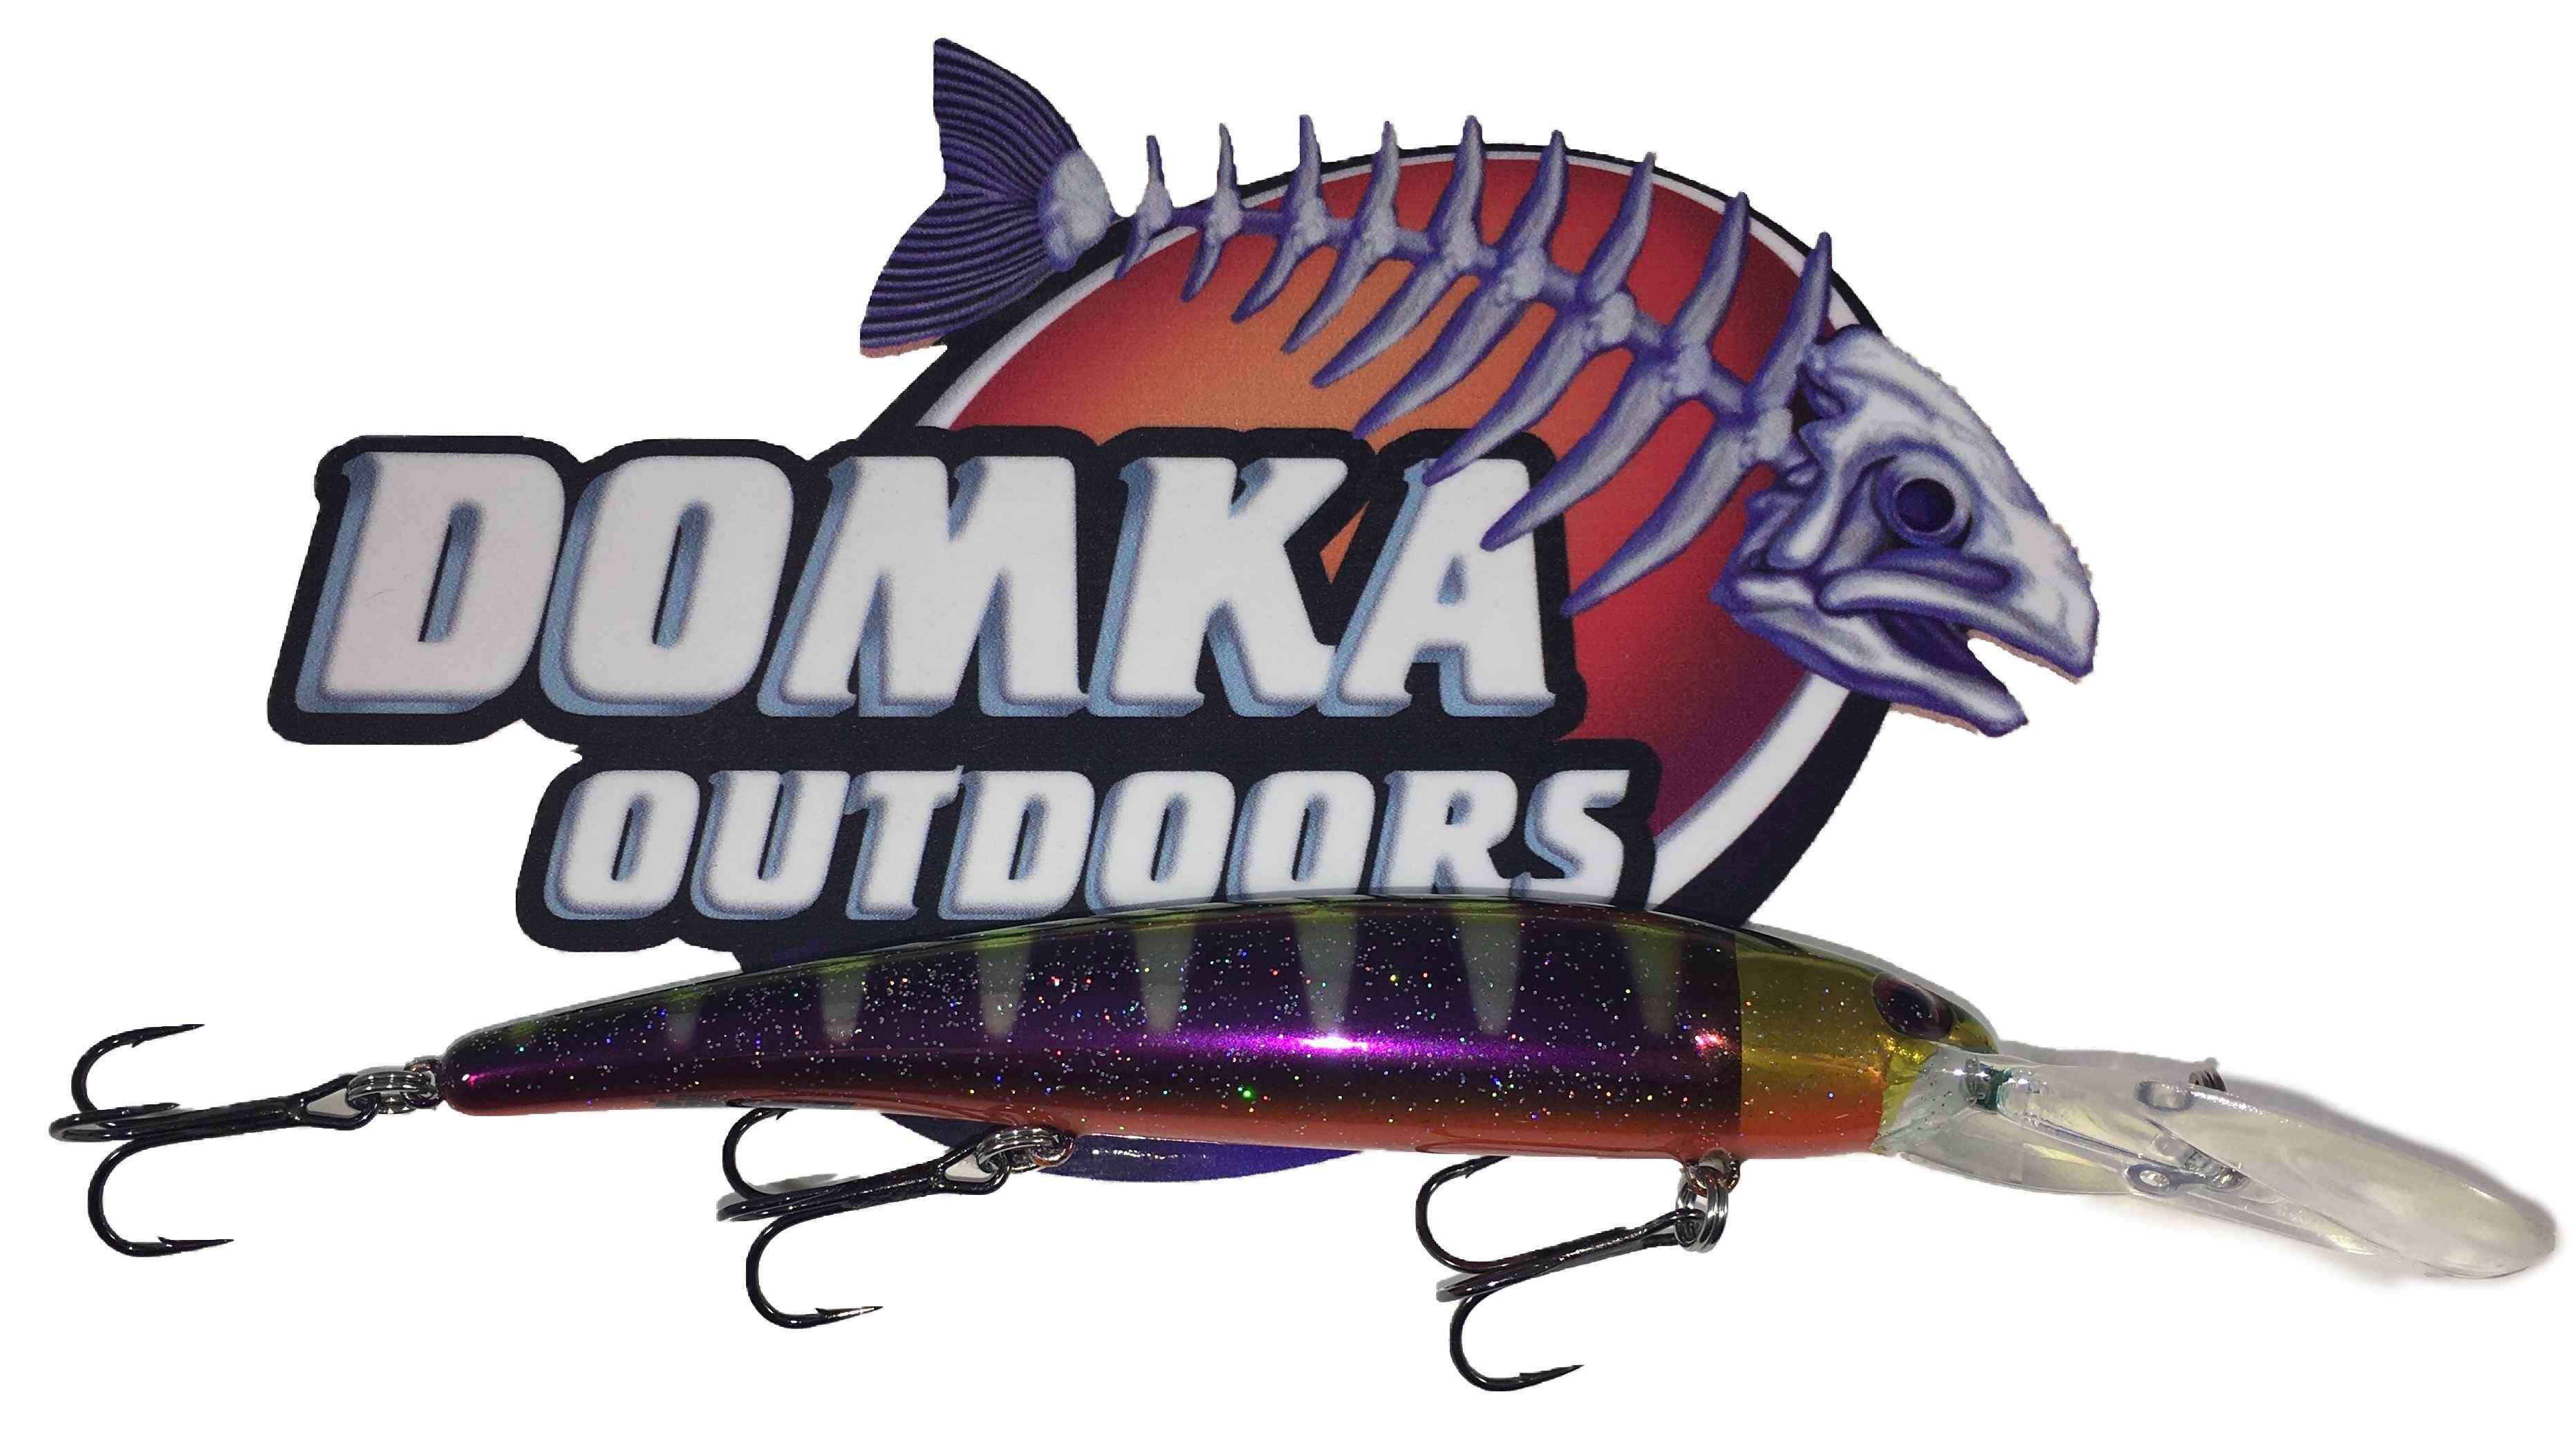 Bulk Fish Head Jigs – Domka Outdoors